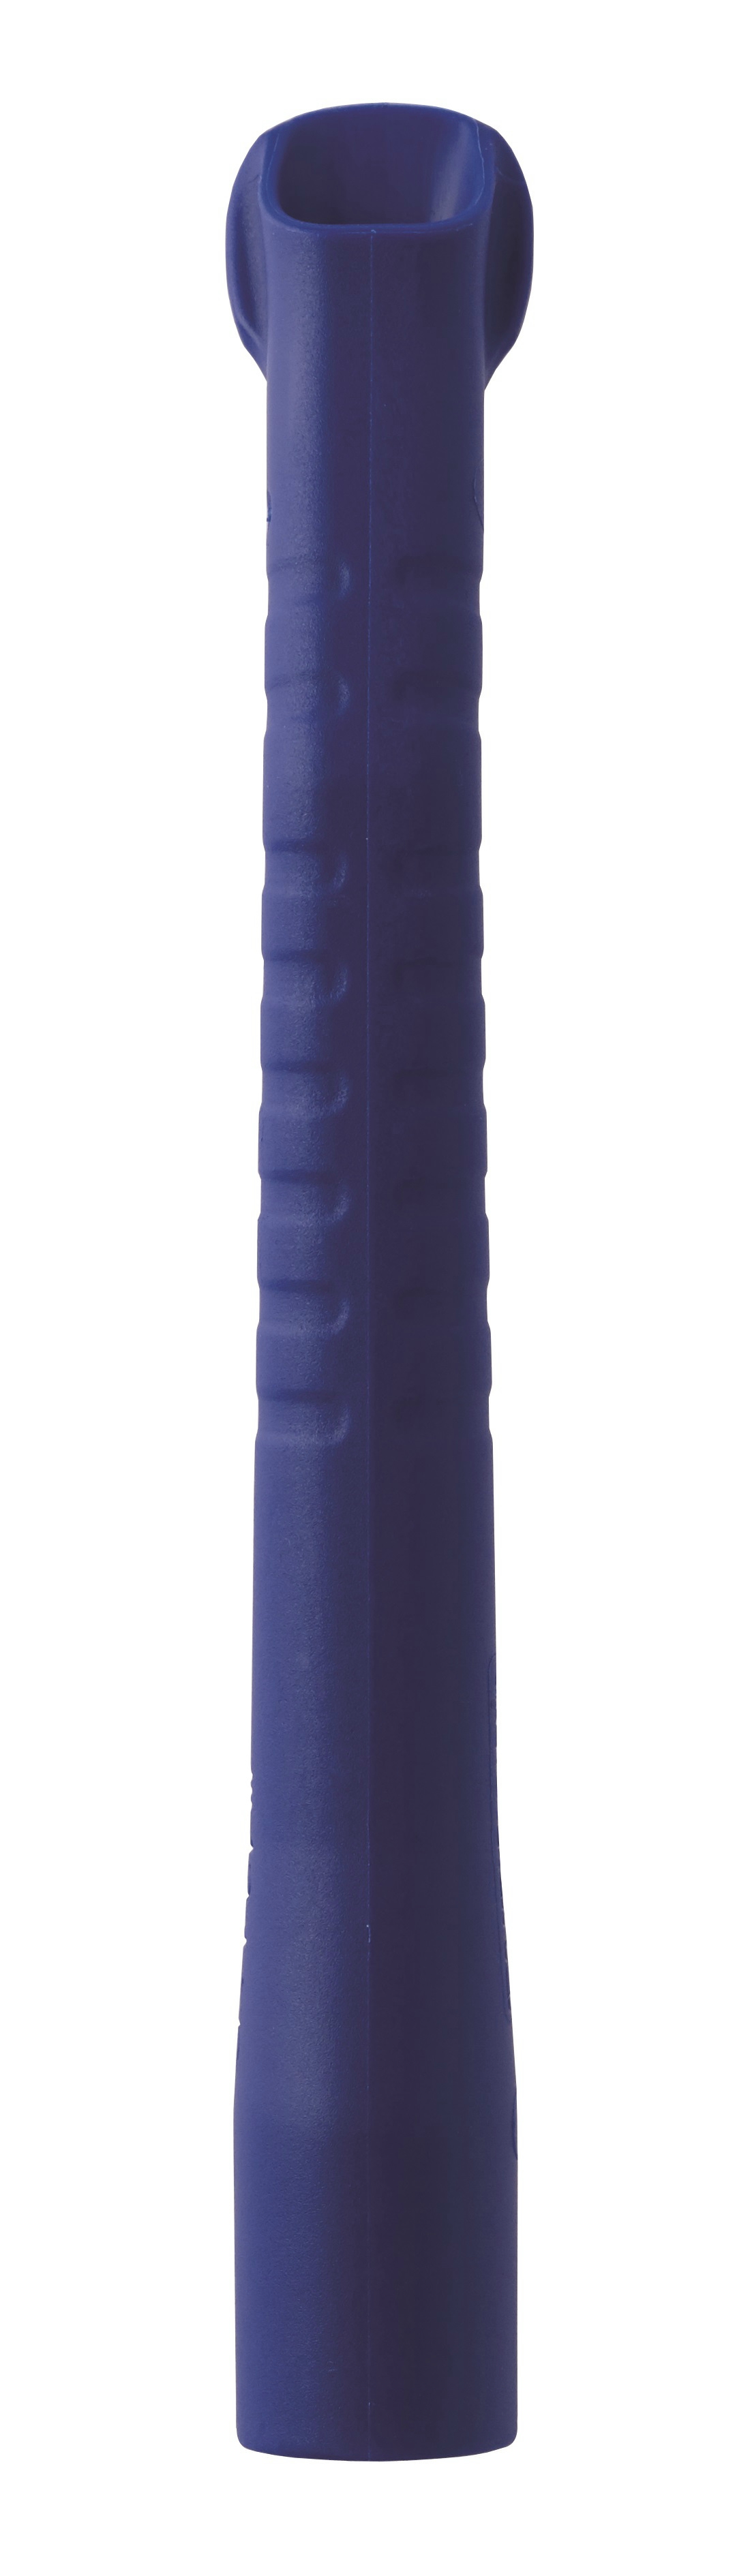 Exhaustor szívó kék 16mm/11,4cm (nomál méret)10db